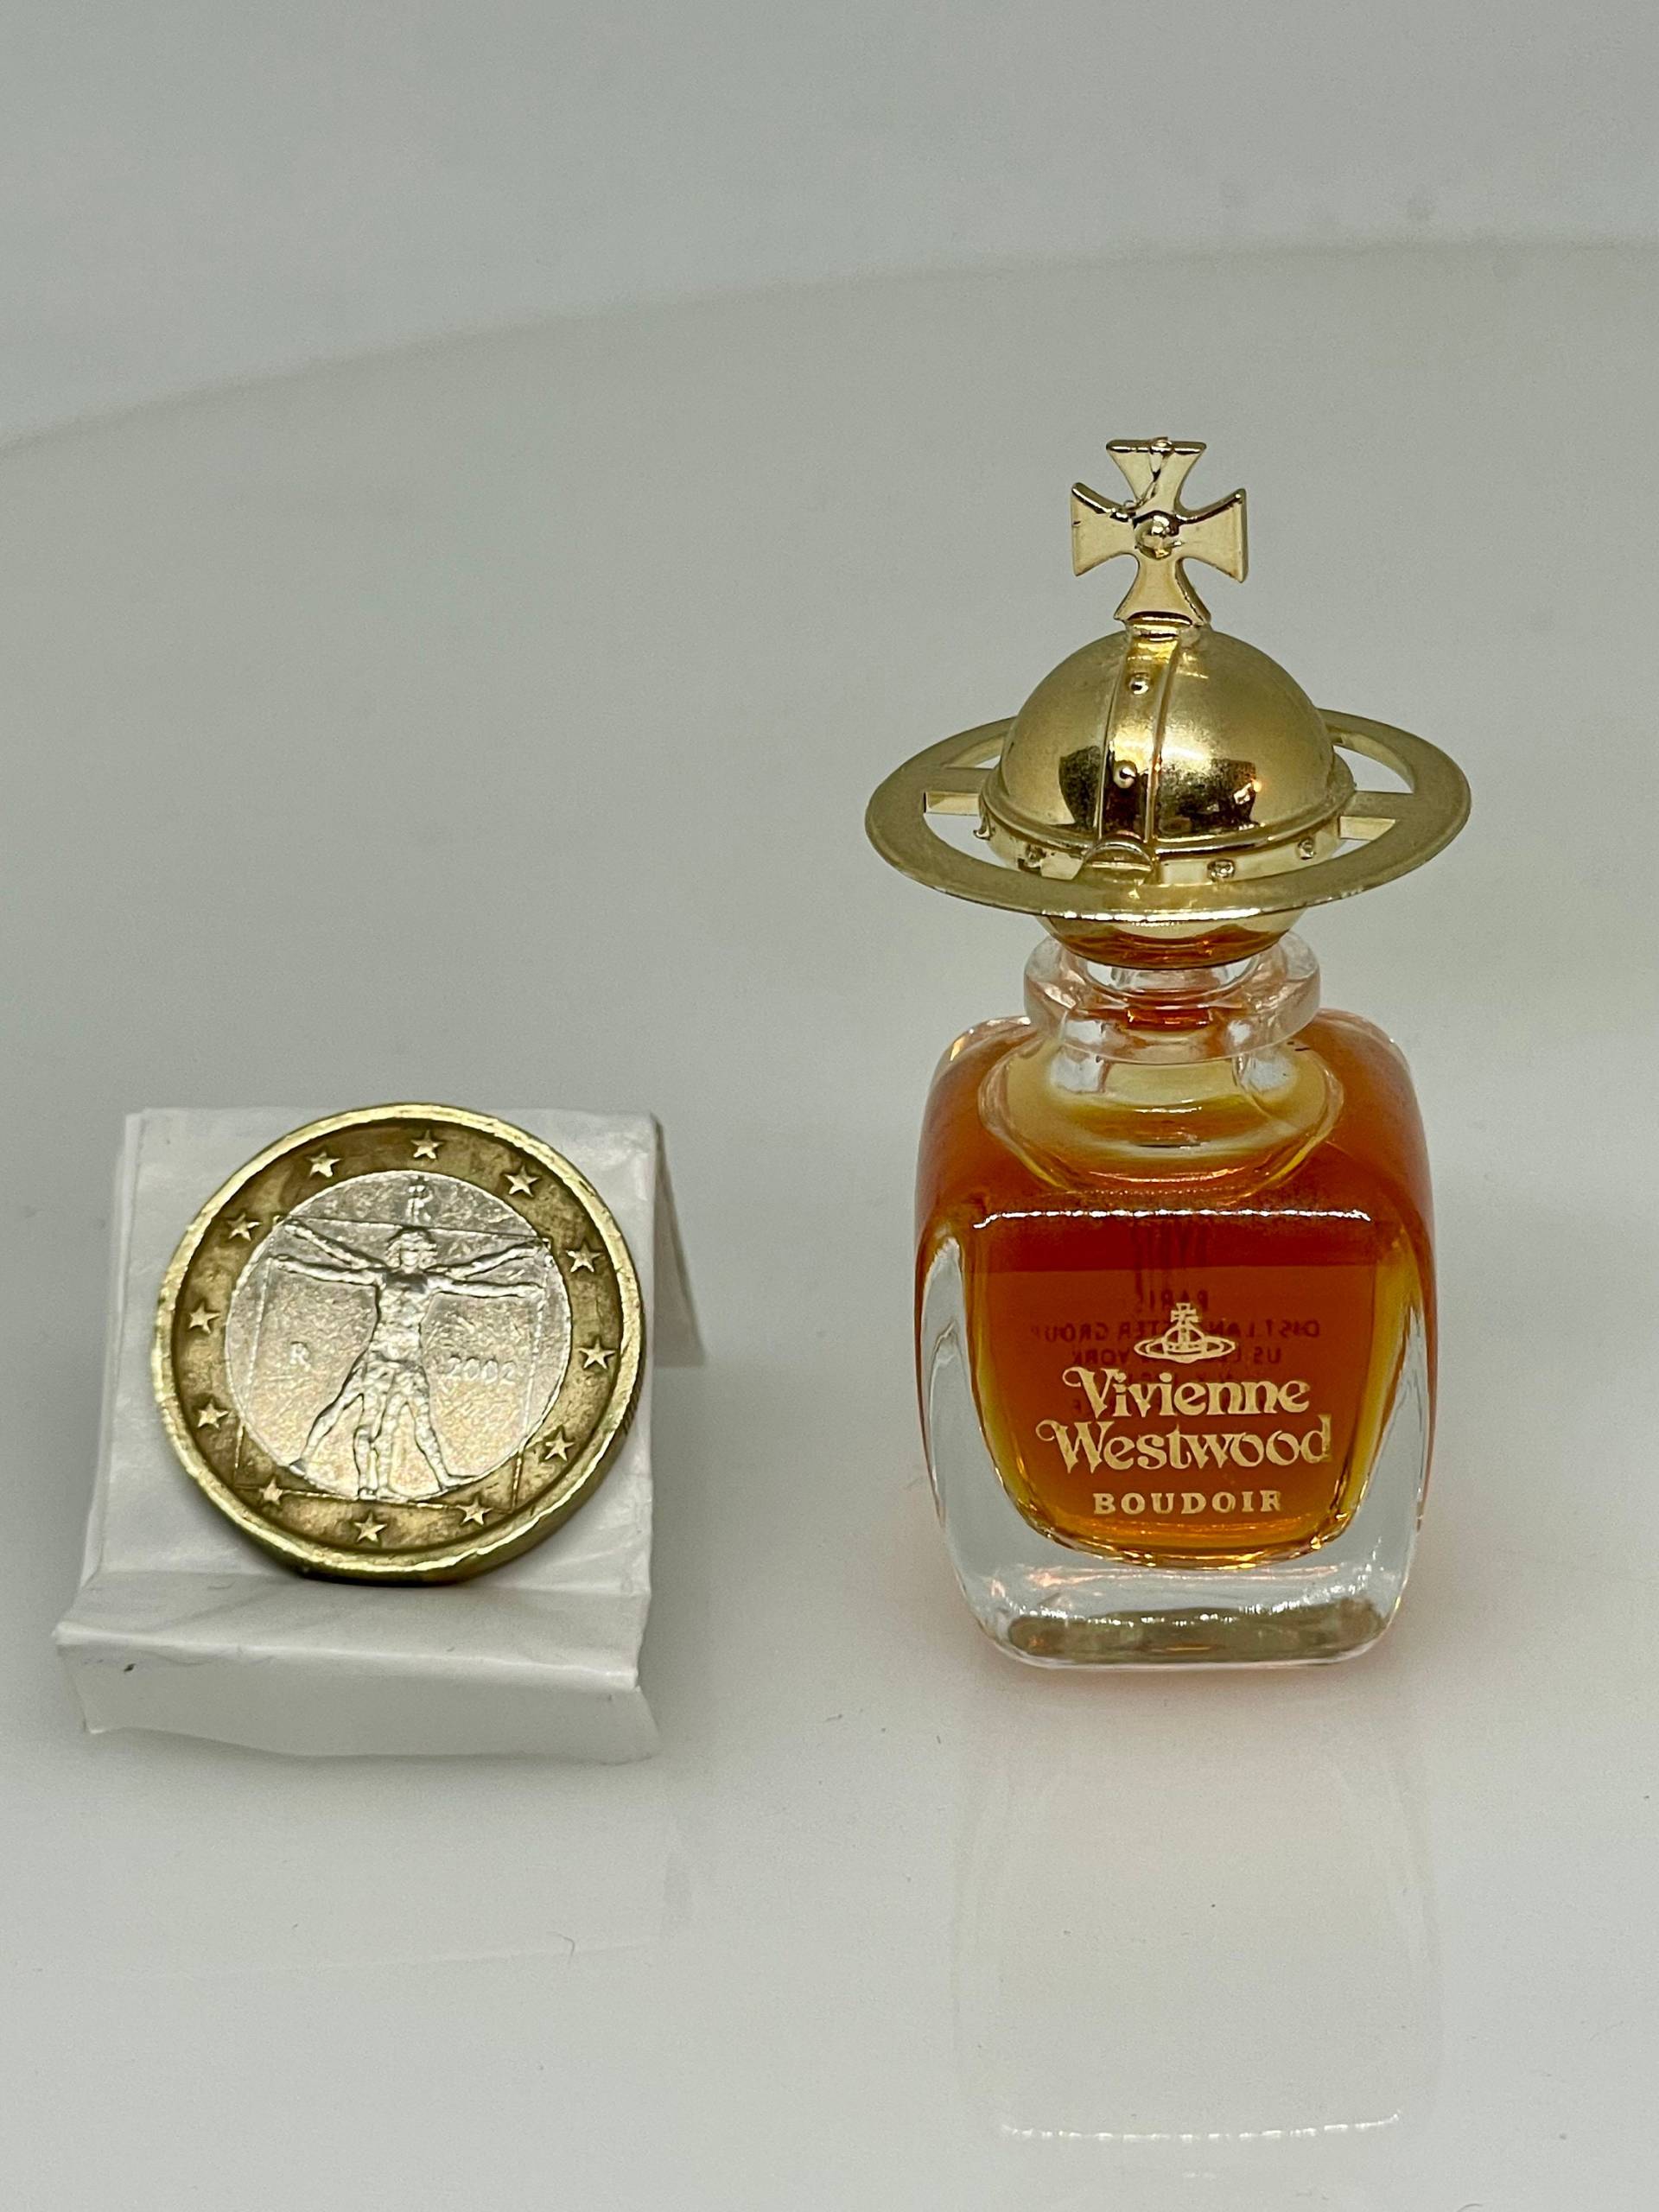 Boudoir Von Vivienne Westwood 1998 Vintage Erstausgabe Eau De Parfum Miniatur von VibaVintage